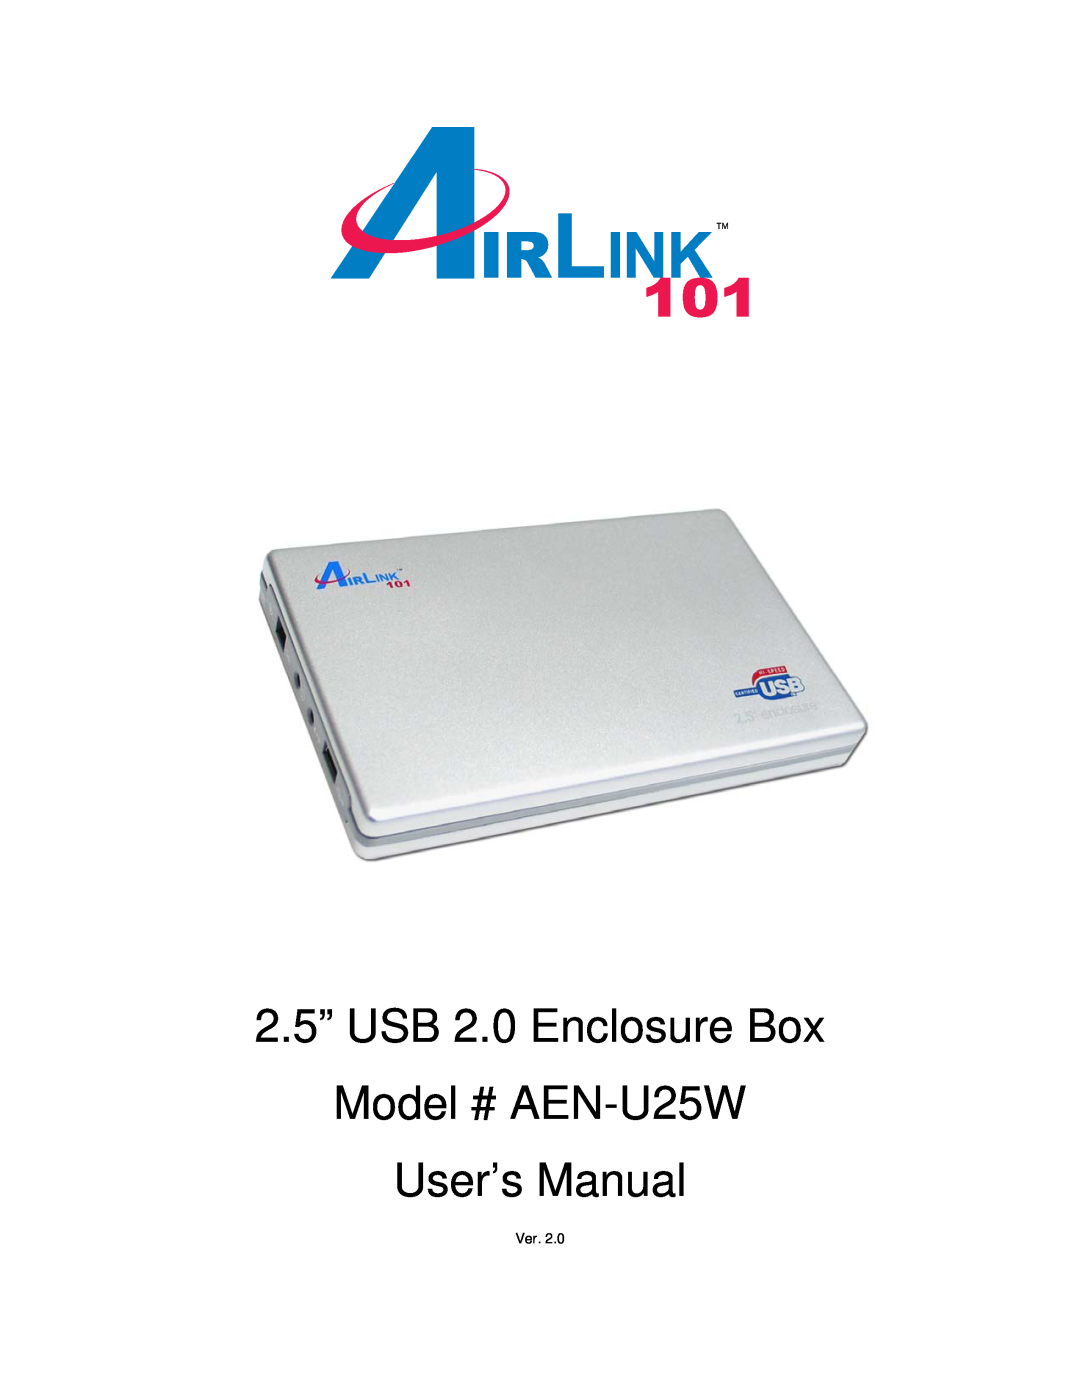 Airlink101 user manual 2.5” USB 2.0 Enclosure Box, Model # AEN-U25W User’s Manual 